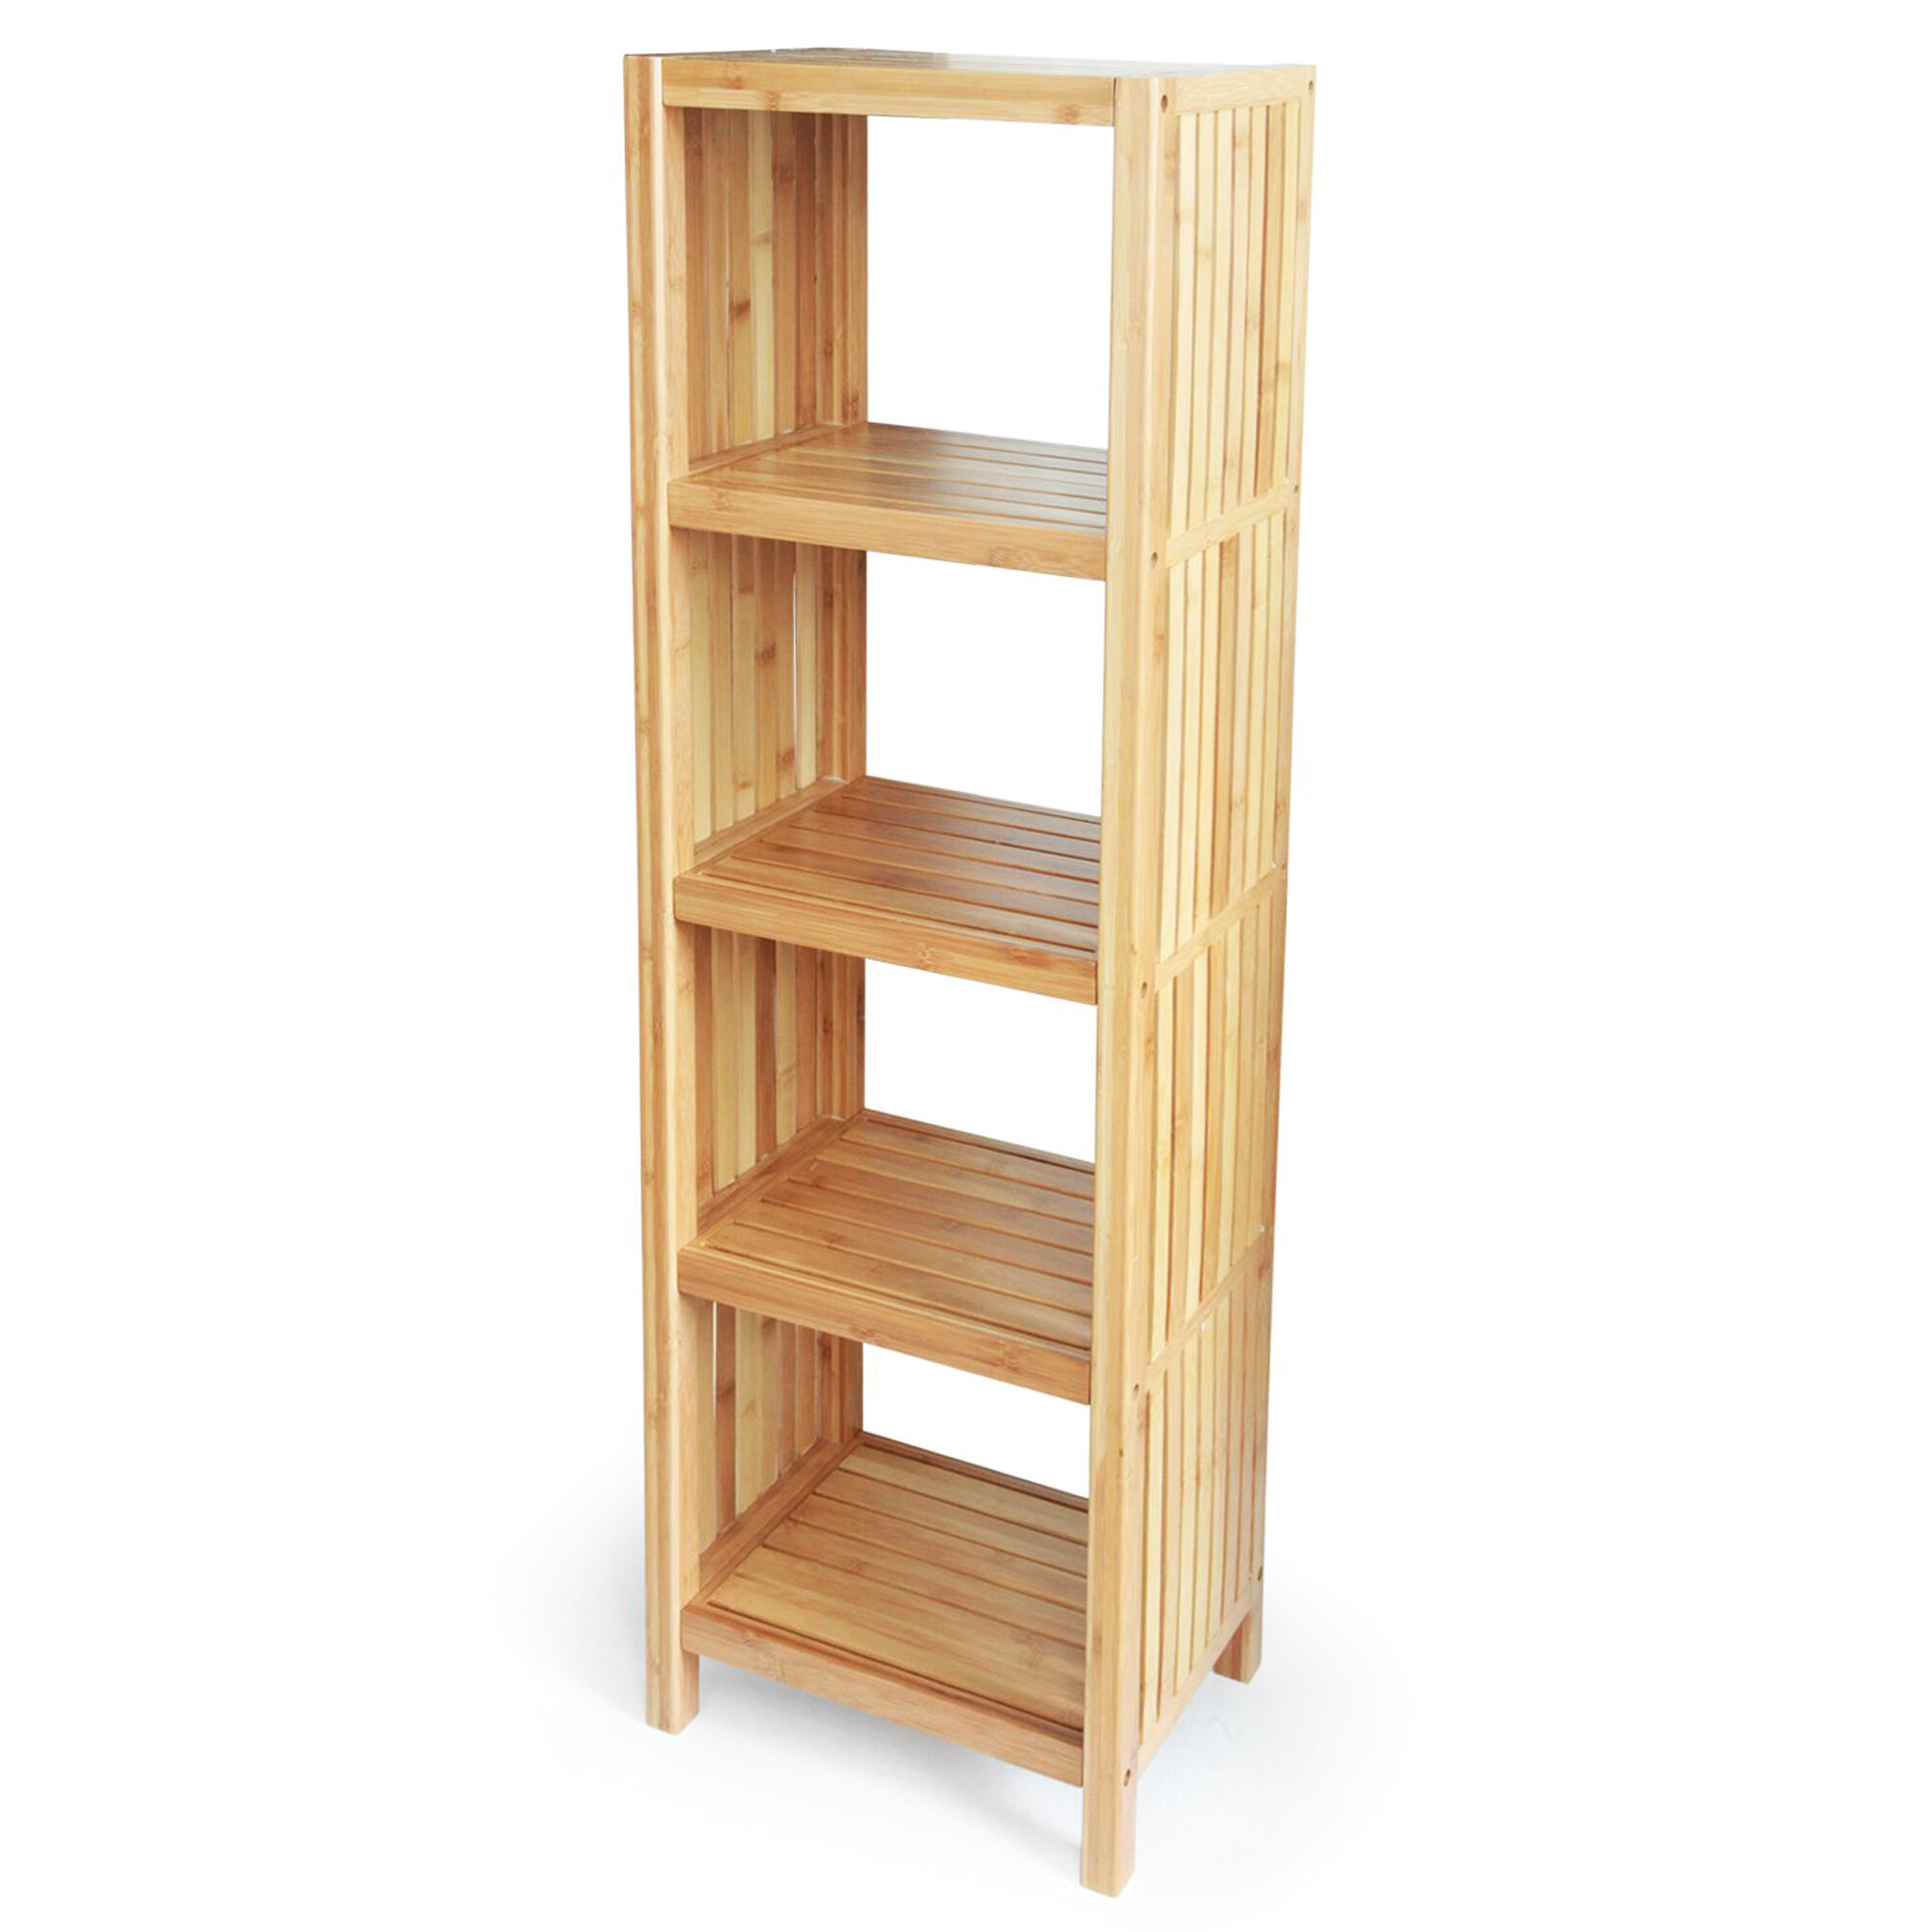 https://assets.wfcdn.com/im/52971408/compr-r85/1110/111003156/jenelle-solid-wood-freestanding-bathroom-shelves.jpg